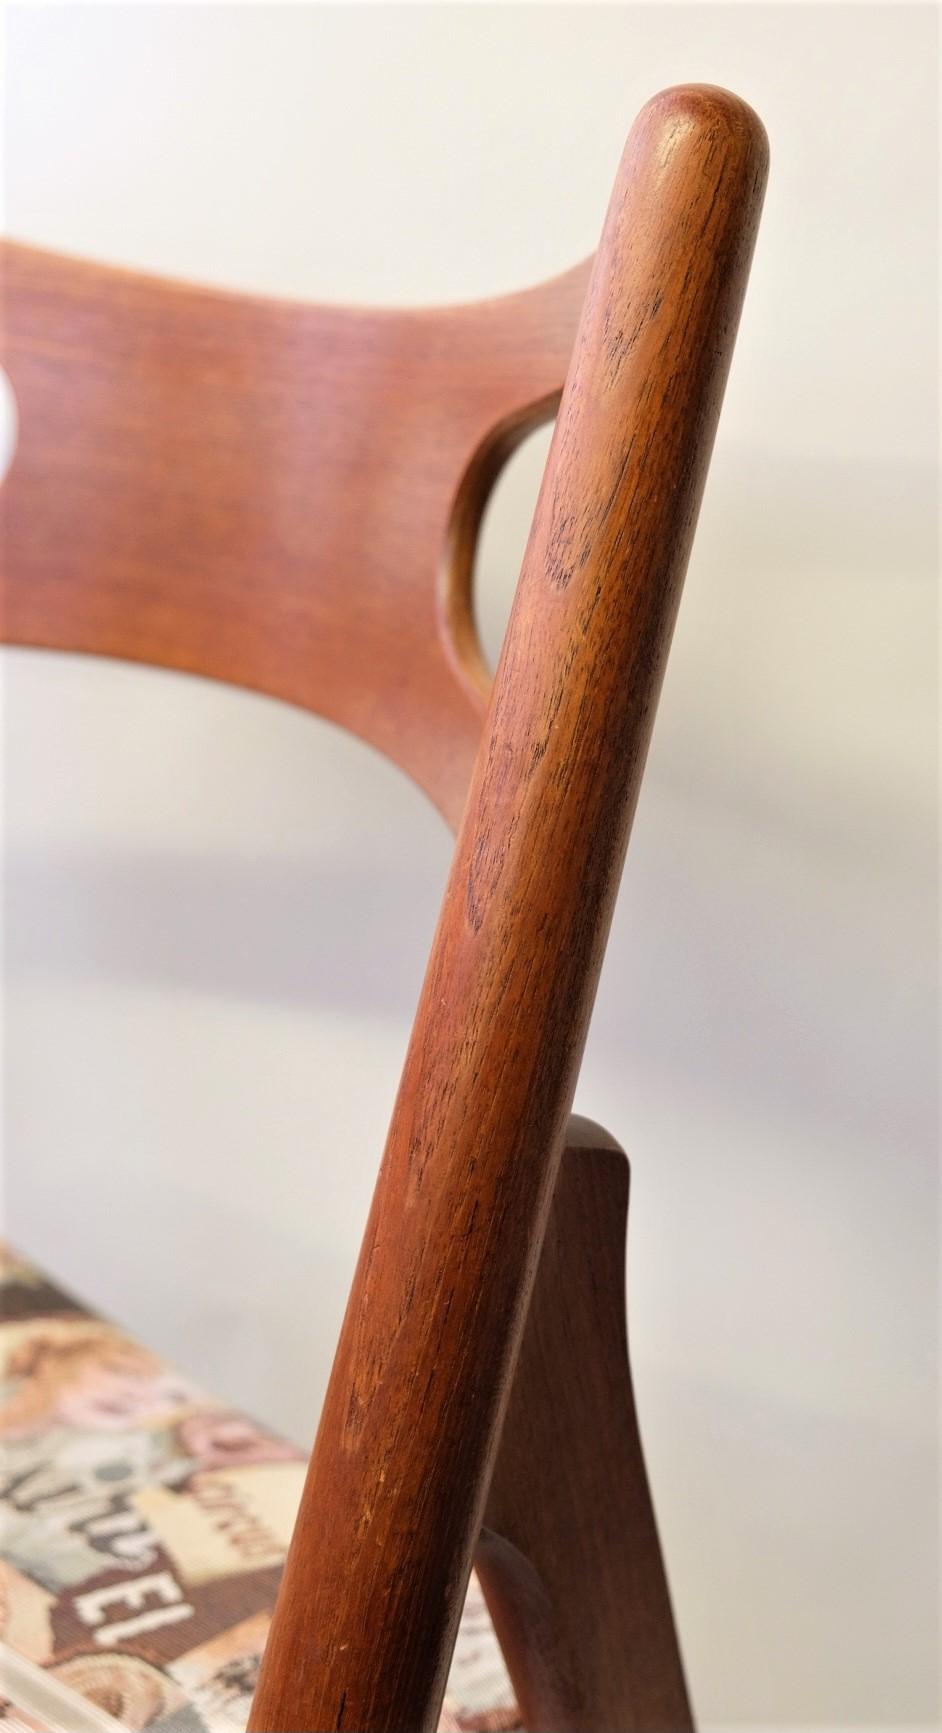 Hans J. Wegner Mid-Century Sawbuck Dining Chair CH29 Teak for Carl Hansen & Son For Sale 7